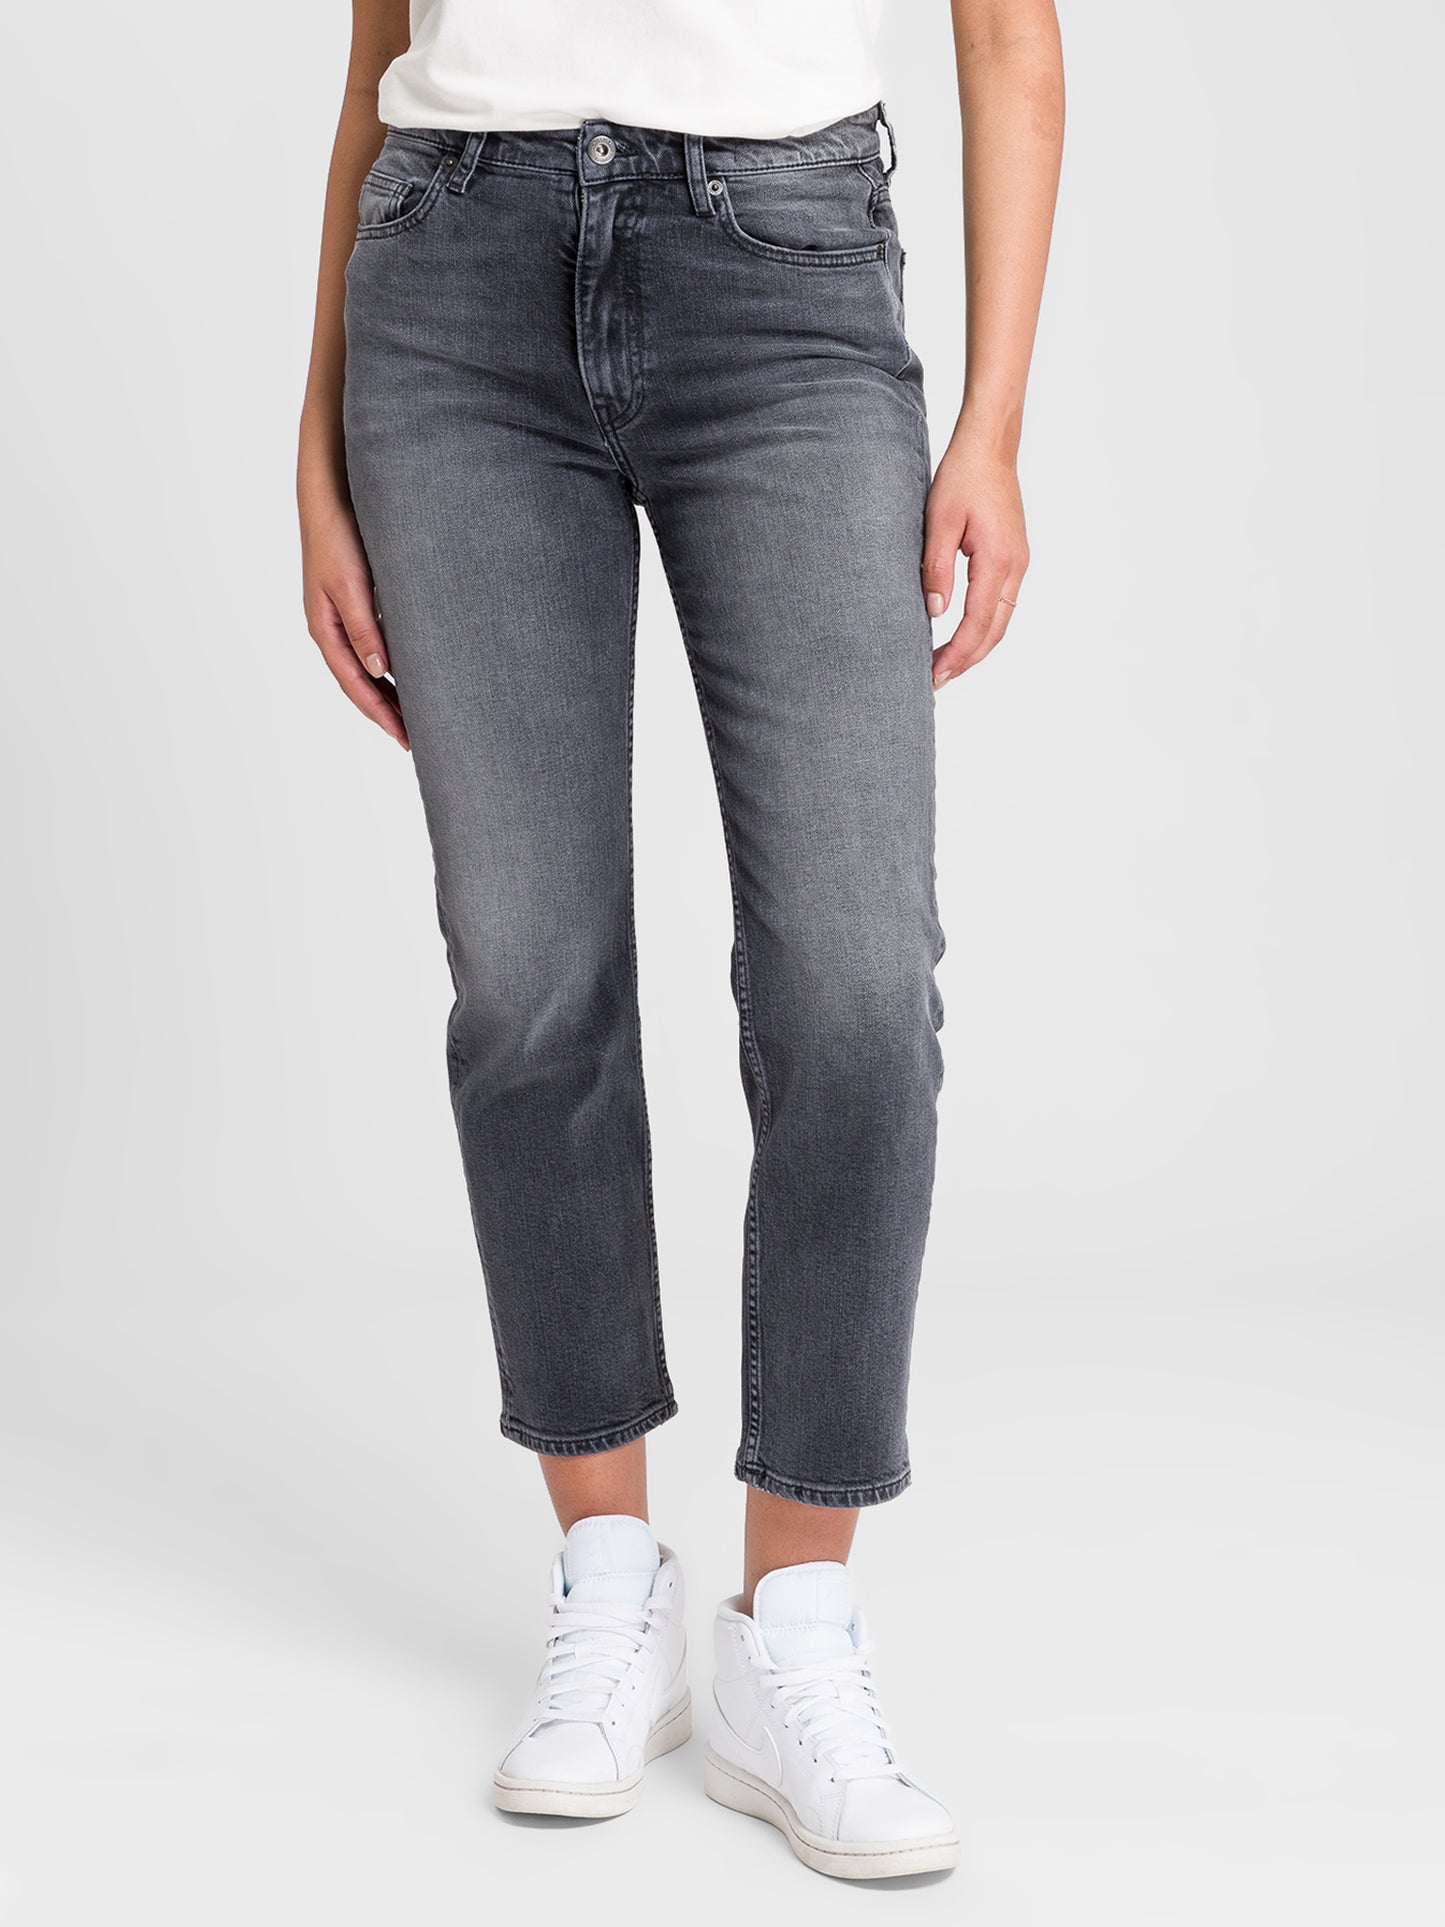 Marisa Damen Jeans Regular Fit High Waist Straight Leg schwarz